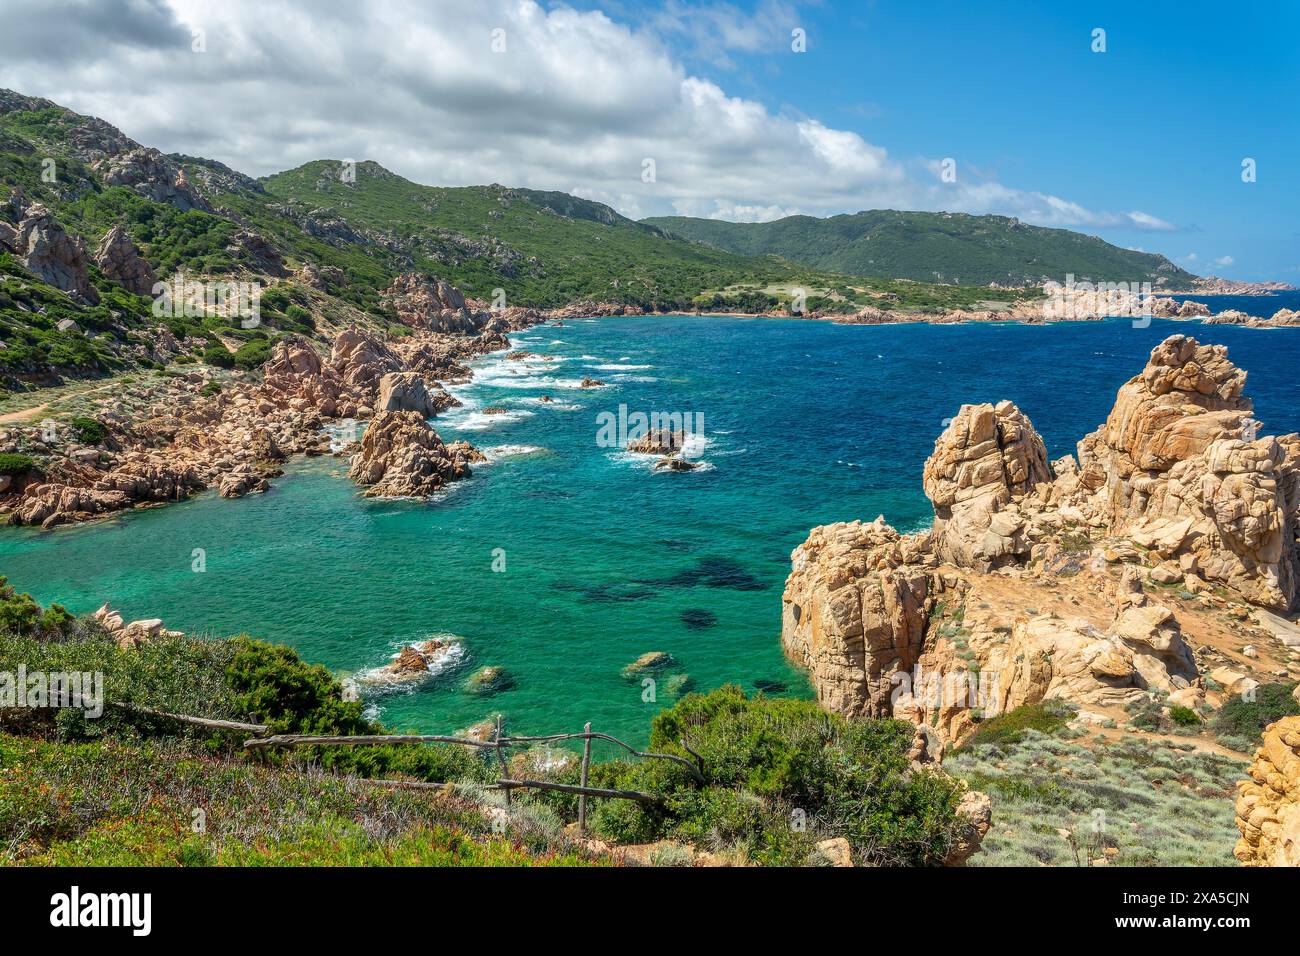 Vue sur la crique de Li Cossi sur la côte méditerranéenne et la mer avec de beaux rochers dans l'eau claire à Costa Paradiso, Sardaigne bord de mer Banque D'Images